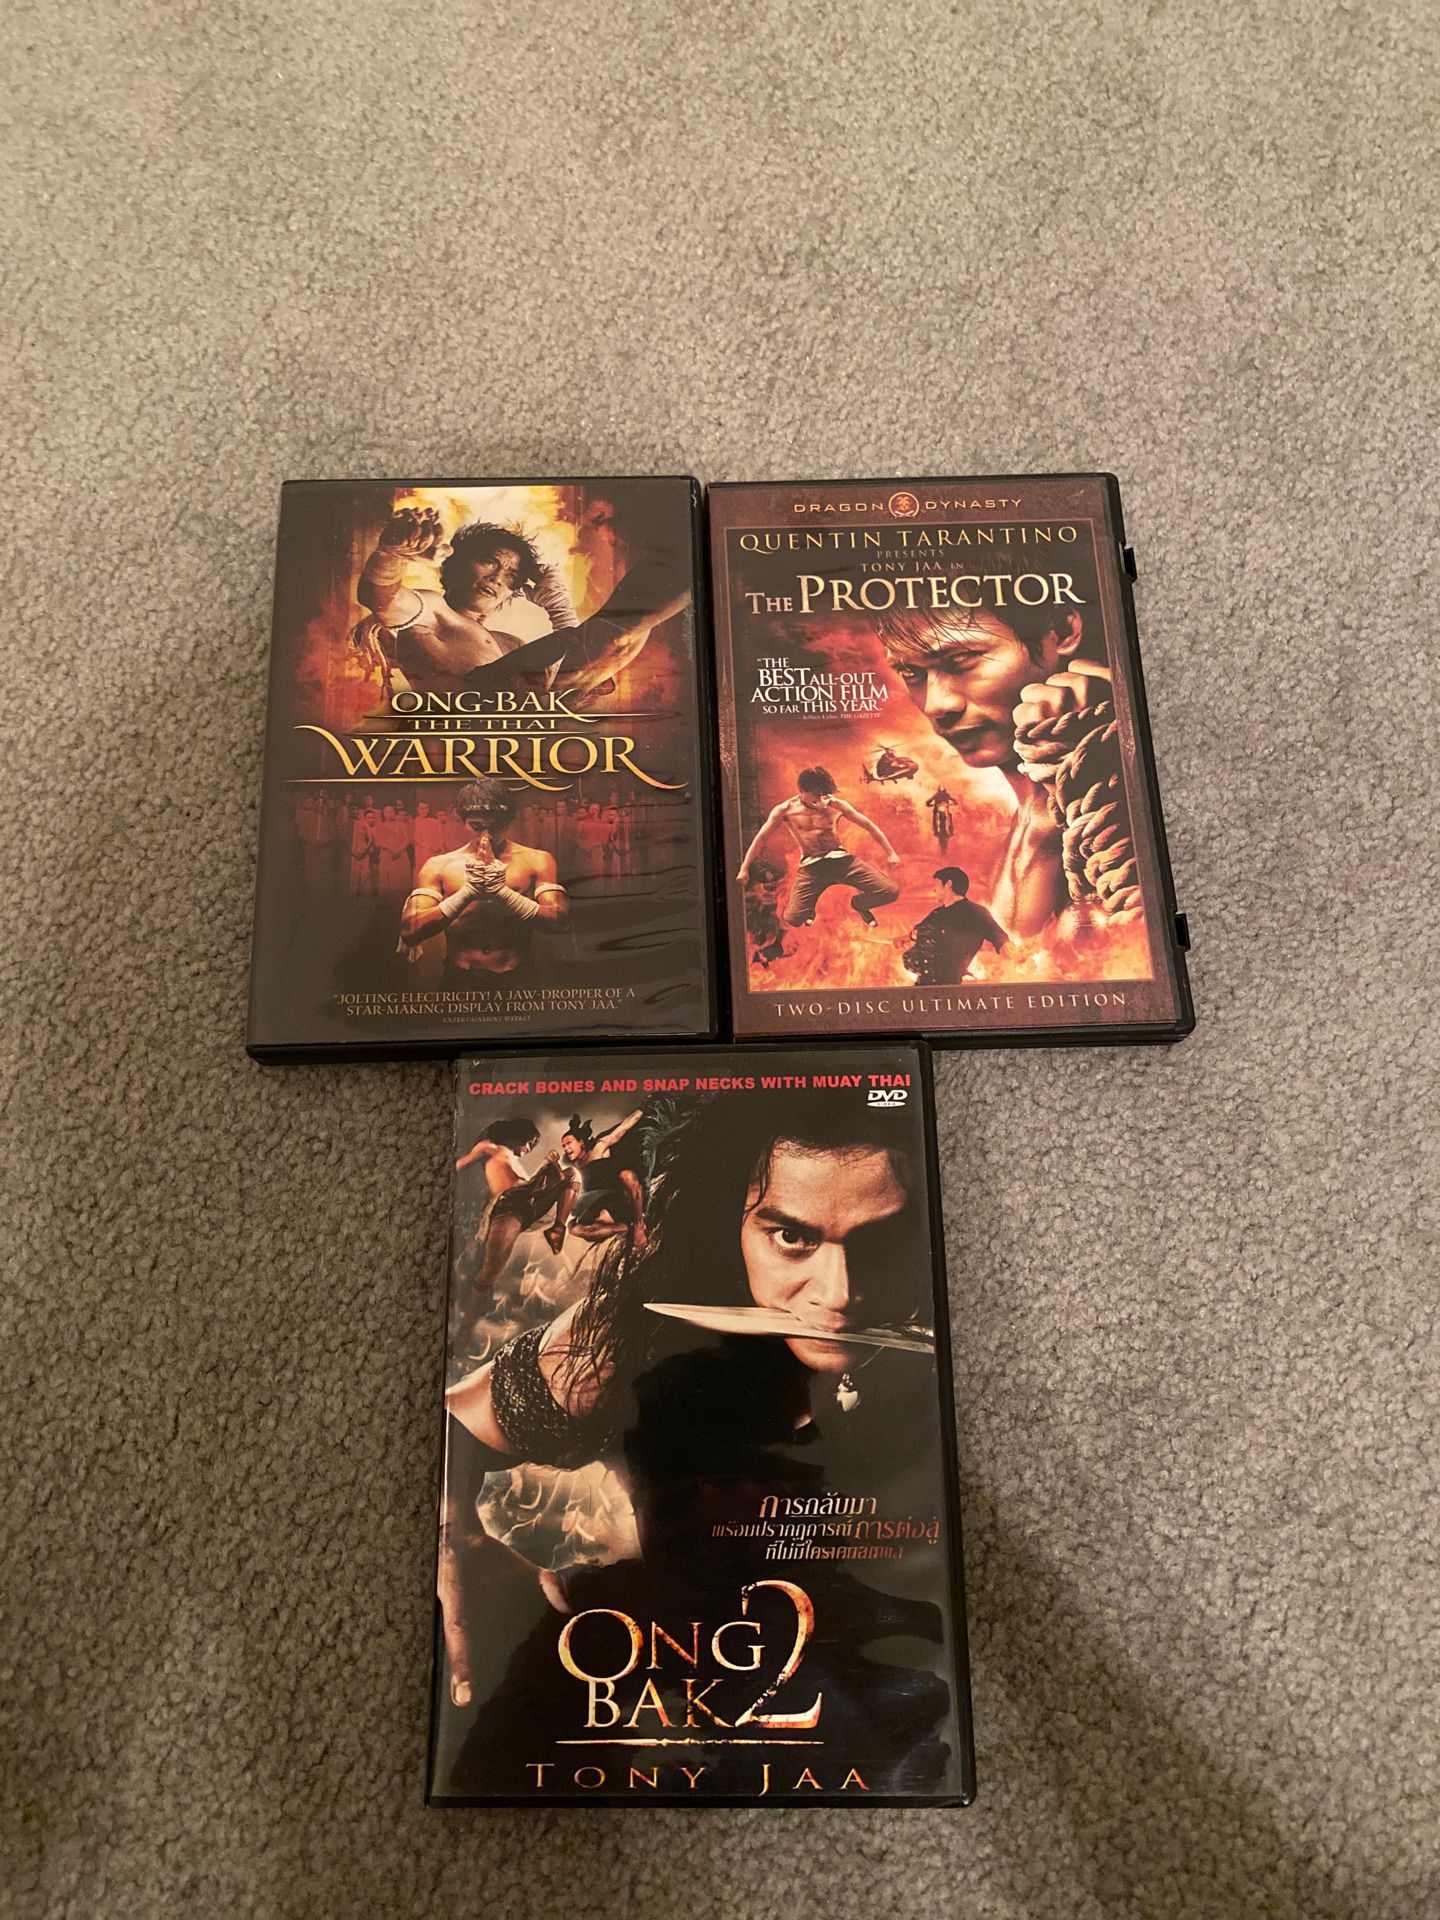 Tony Jaa movies DVD